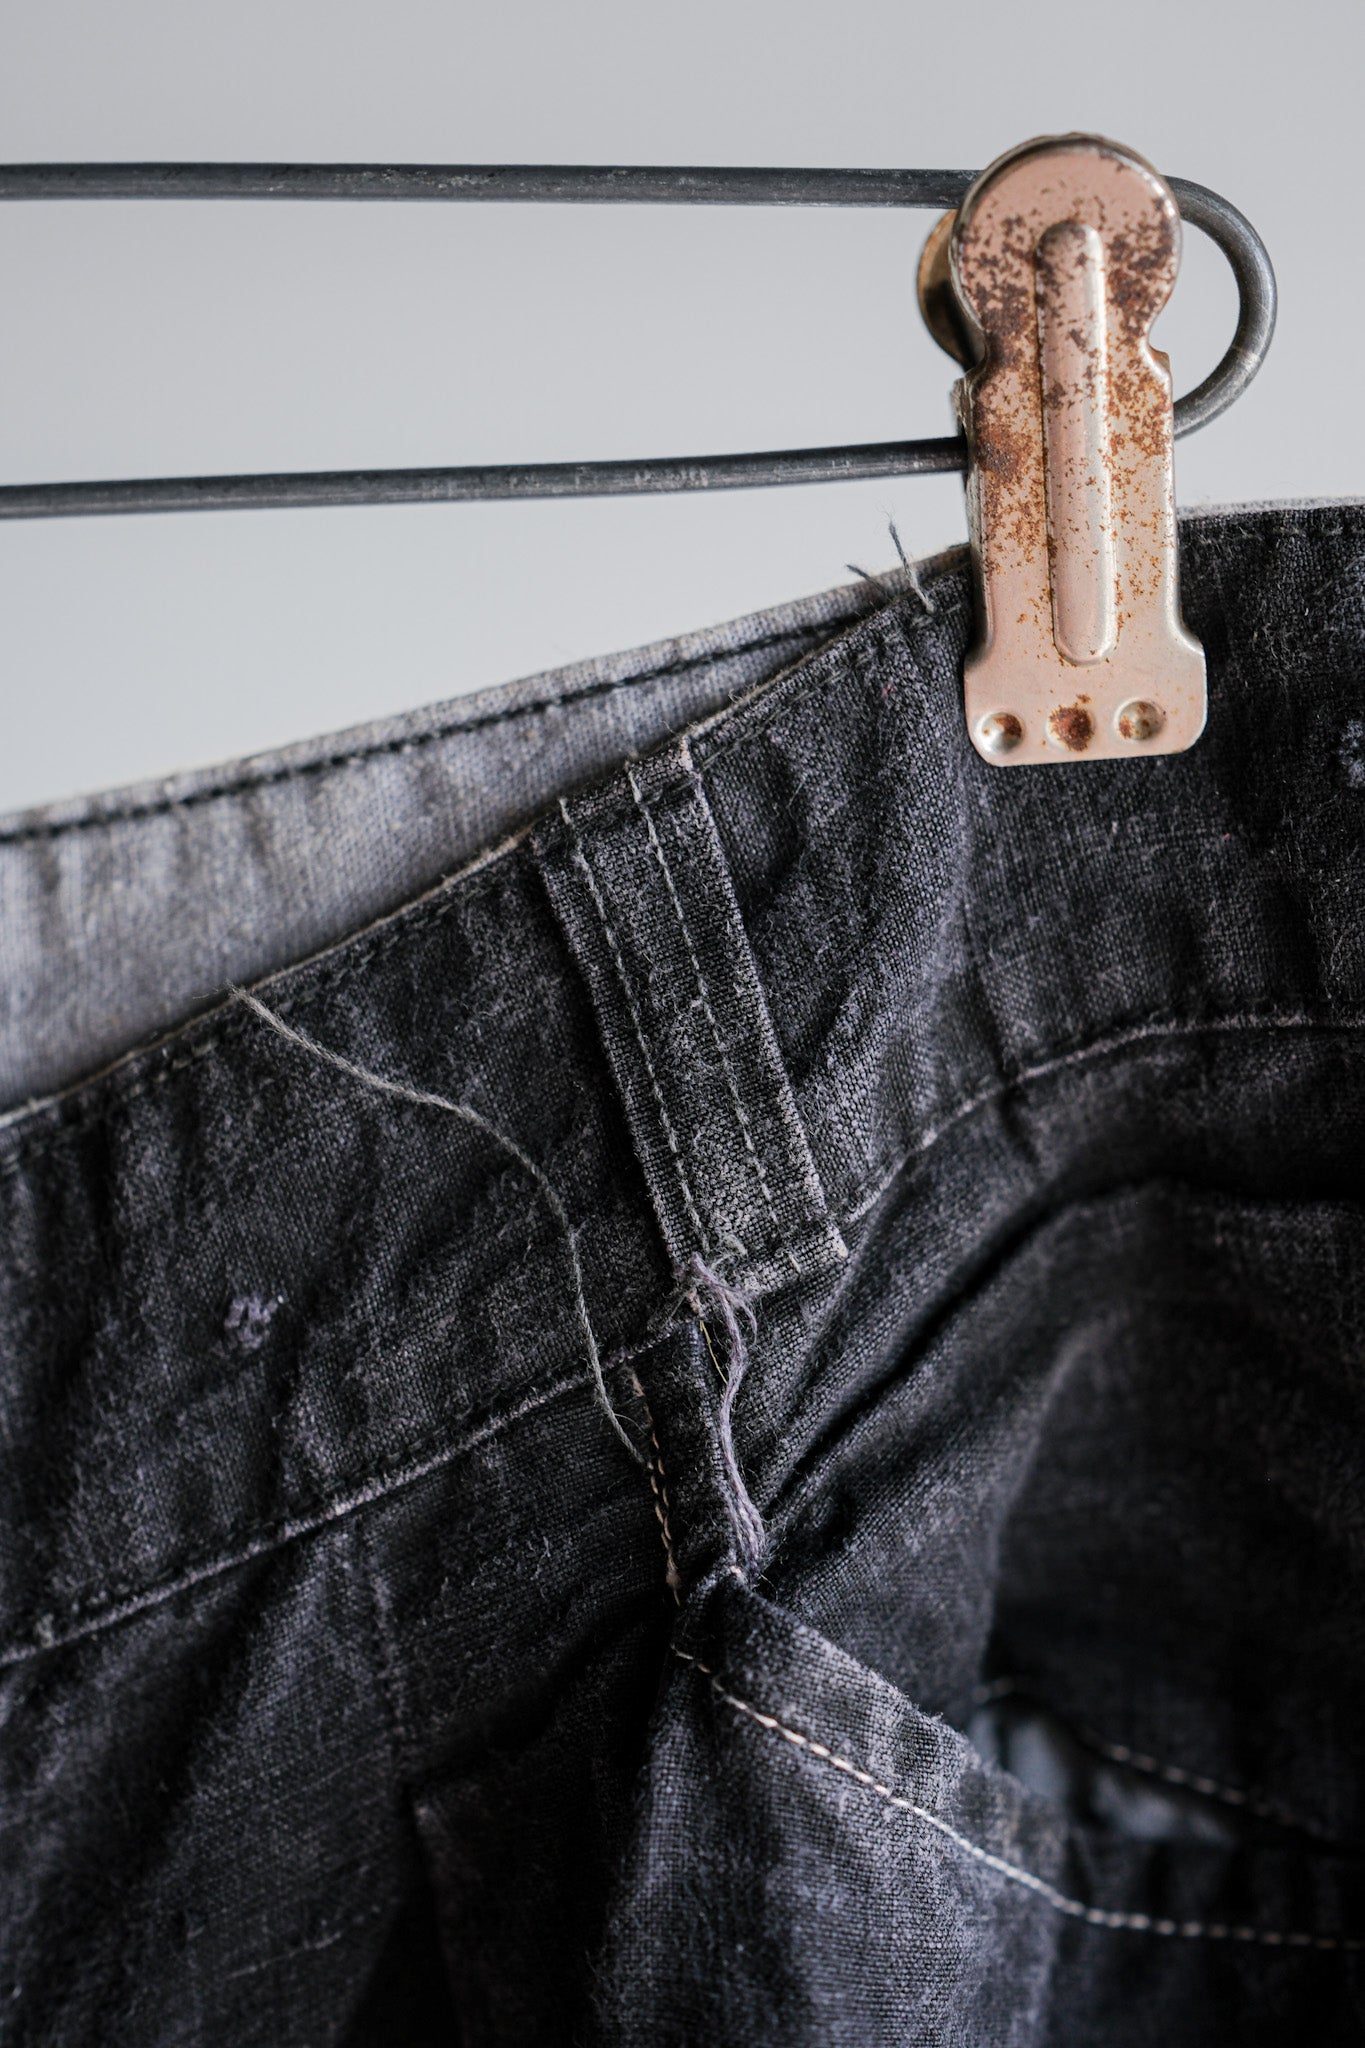 [〜50年代]法國復古黑色亞麻馬奎尼頓褲子的尺寸。44“ au molinel”